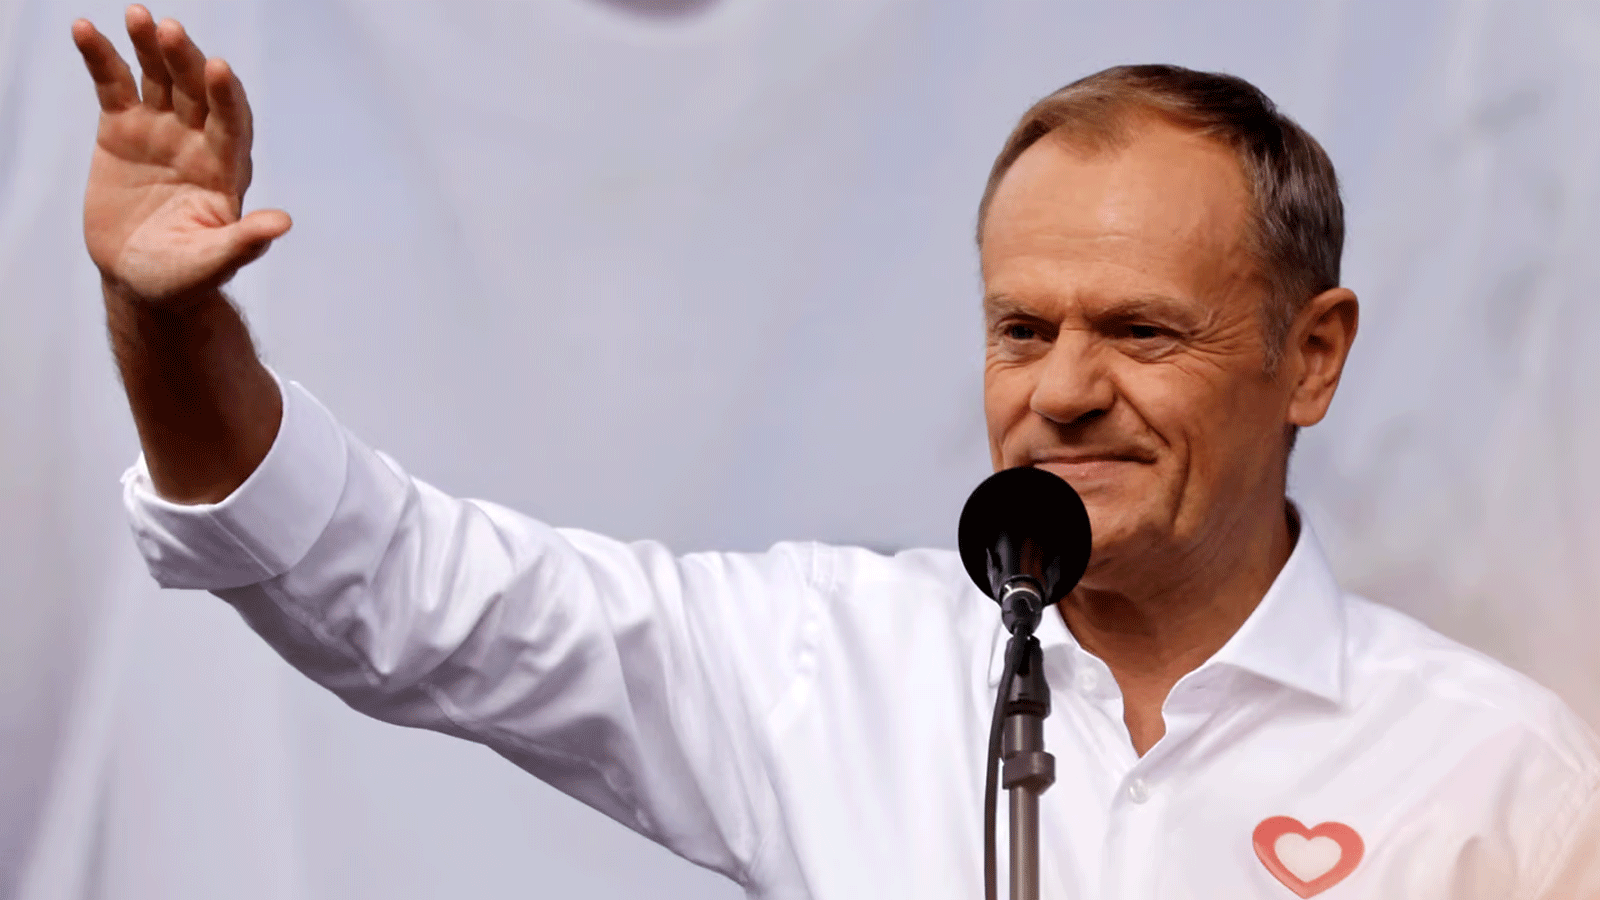 دونالد توسك مرشح التحالف المؤيد لأوروبا لرئاسة الوزراء في بولندا